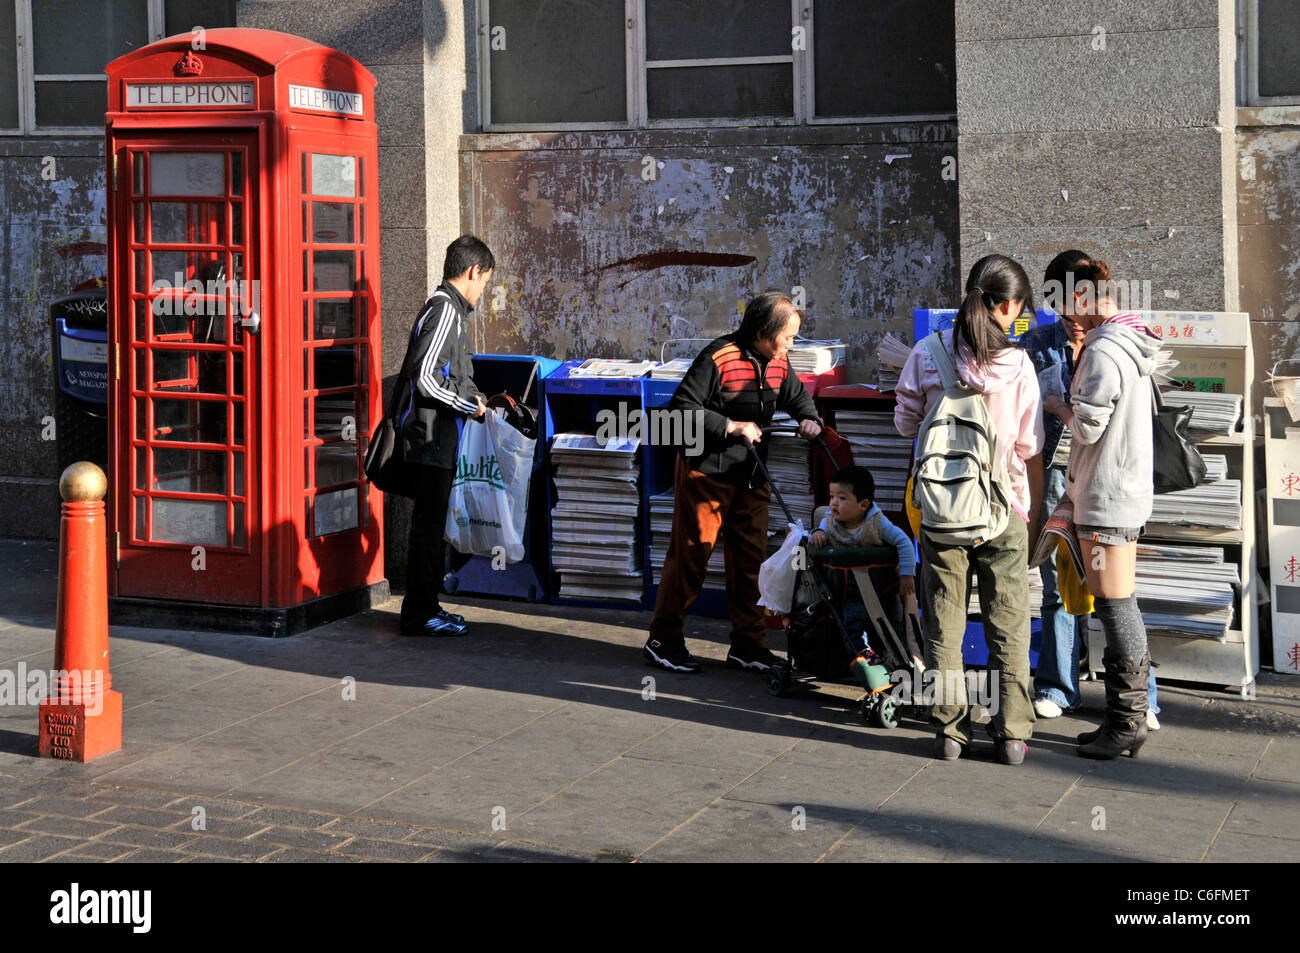 Scène de rue de la ville de Chine les gens se aident à libérer les Chinois Journal dans Chinatown Gerrard Street Londres Angleterre Royaume-Uni Banque D'Images